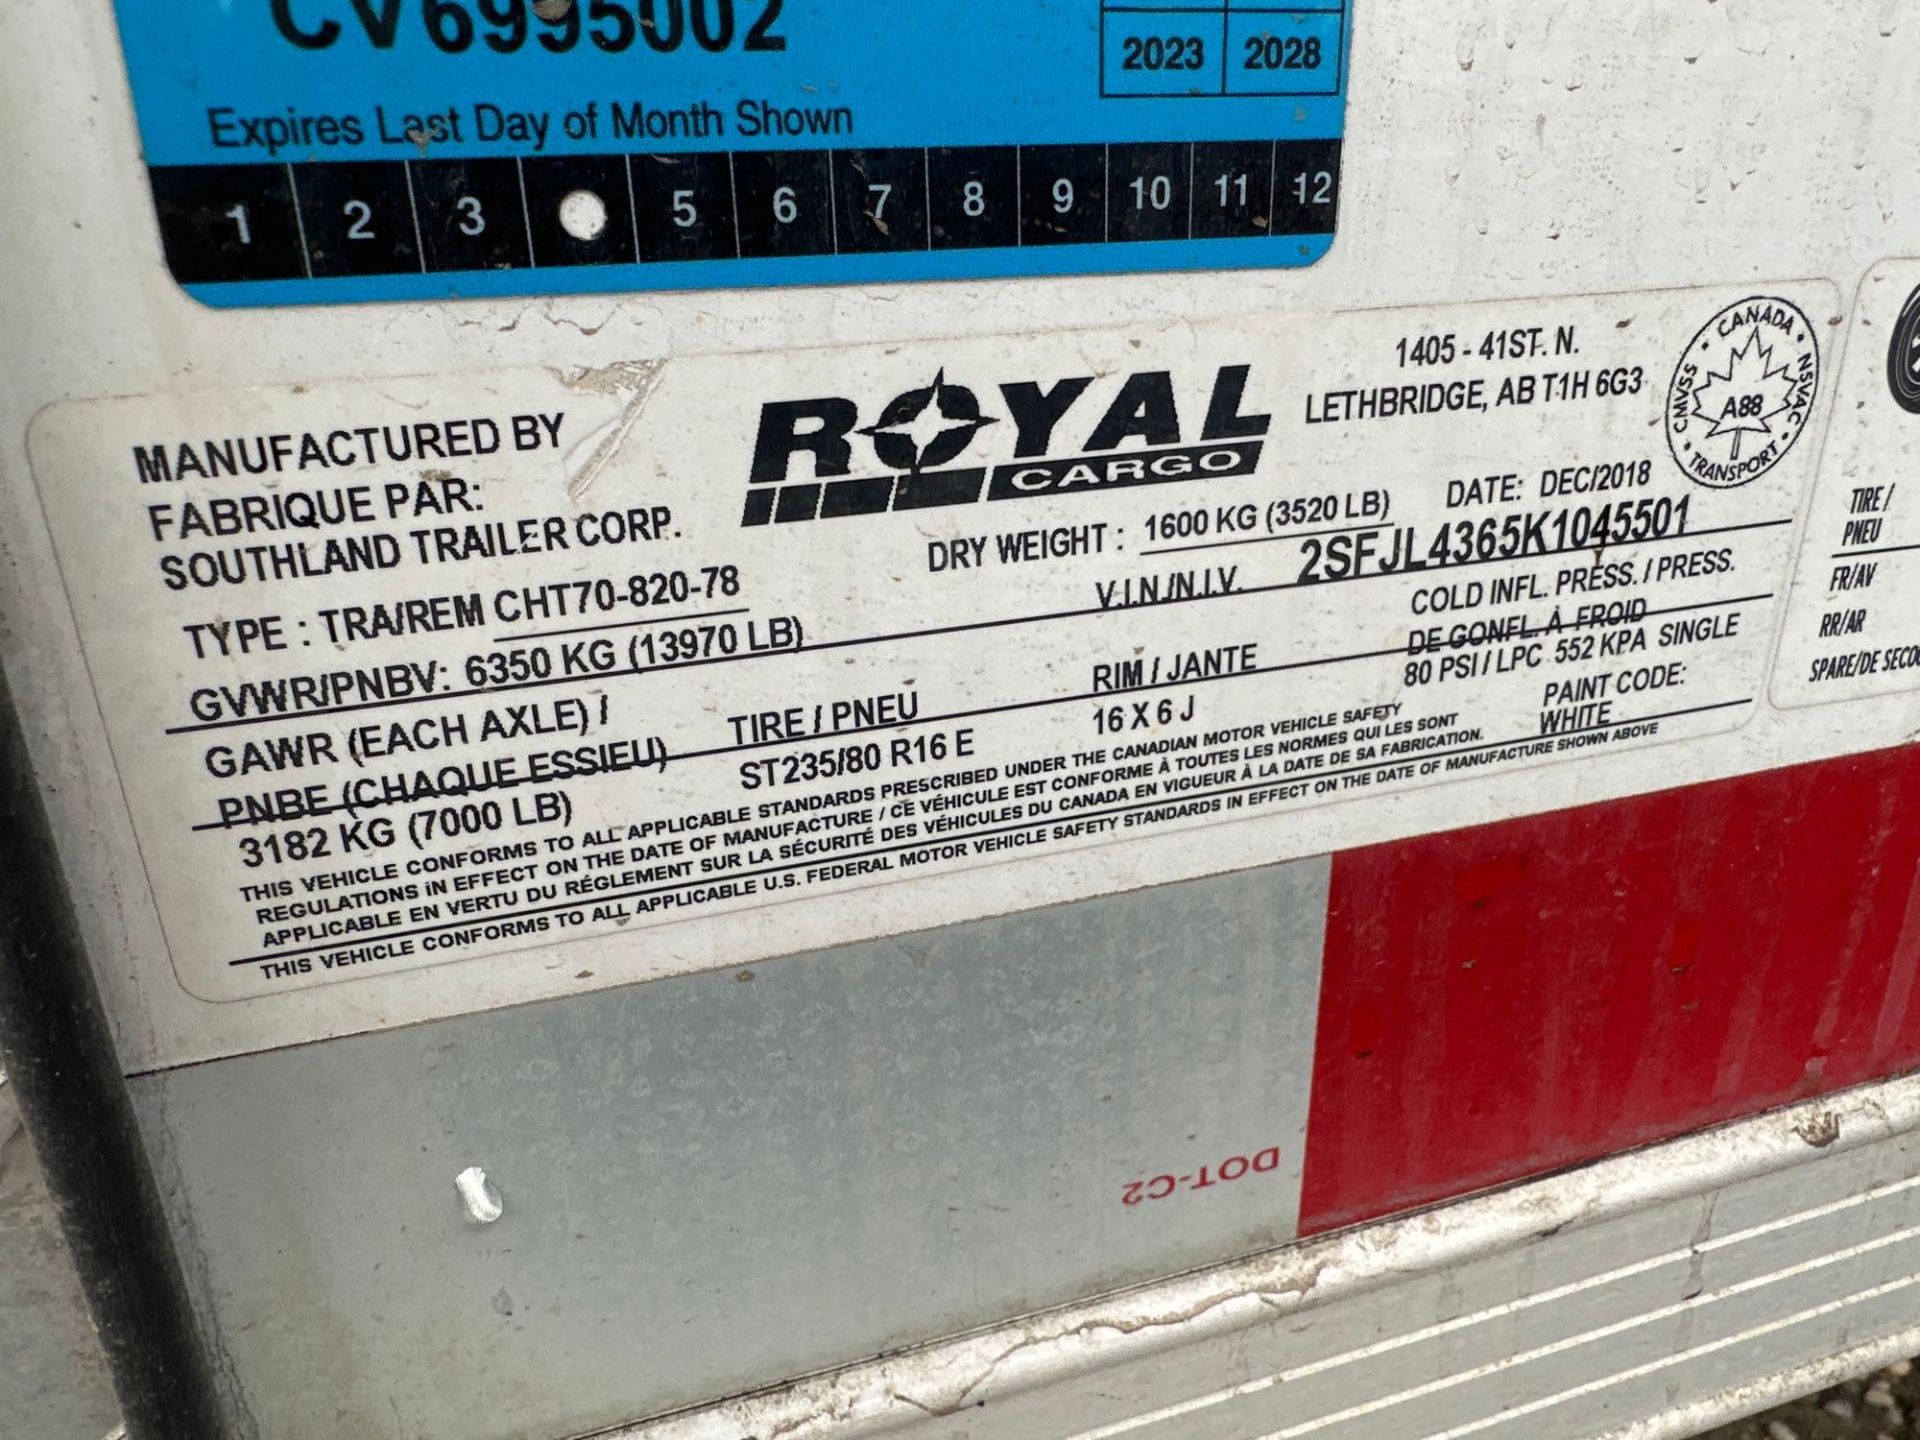 2019 Royal Cargo 20’ T/A Enclosed Trailer VIN: 2SFJL4365K1045501 - Image 14 of 14